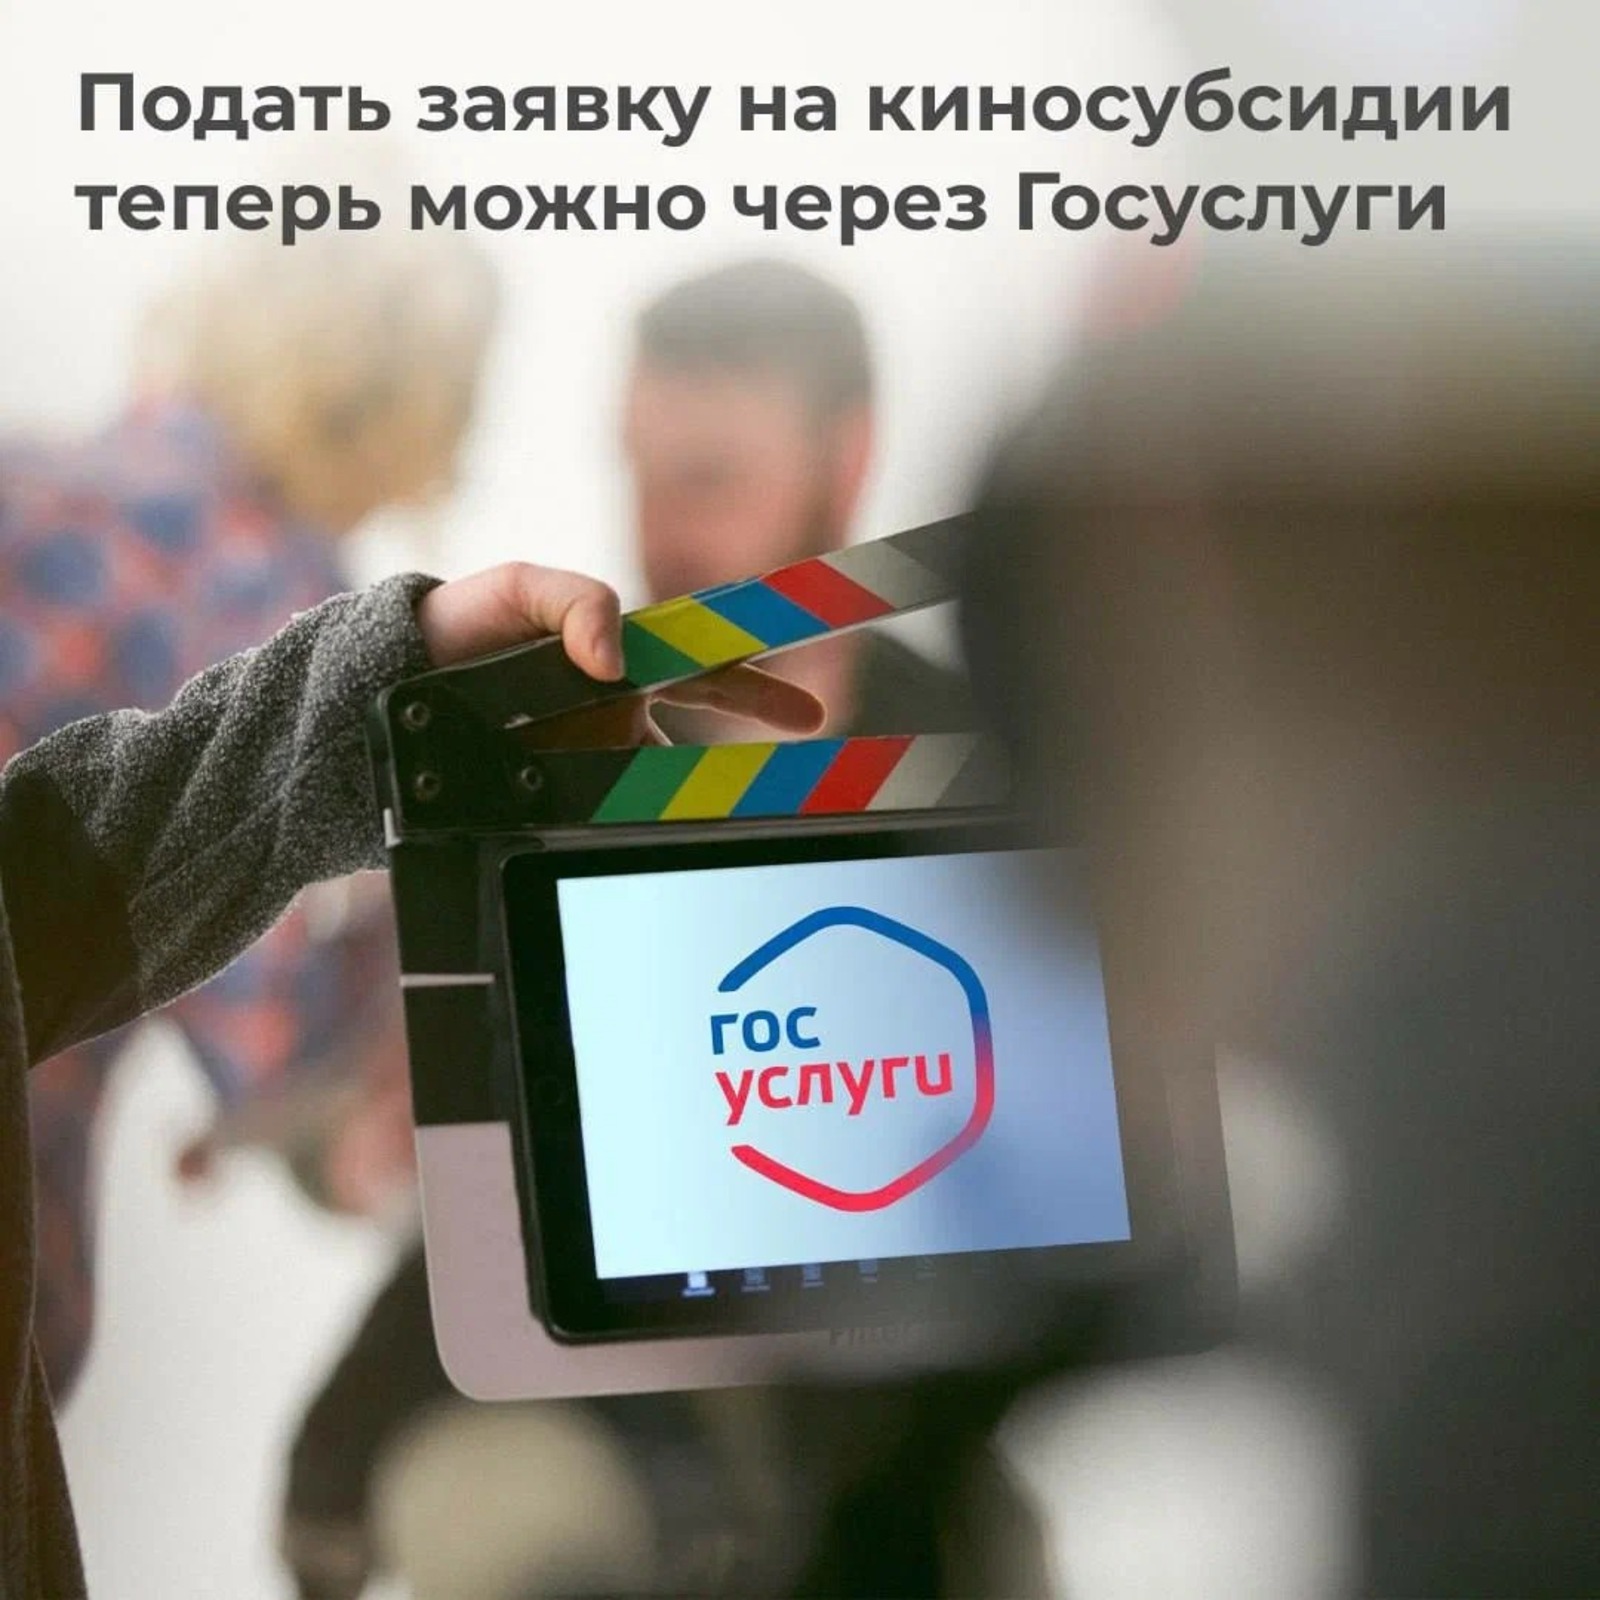 До 15 миллионов рублей могут получить в виде гранта кинематографисты Башкирии